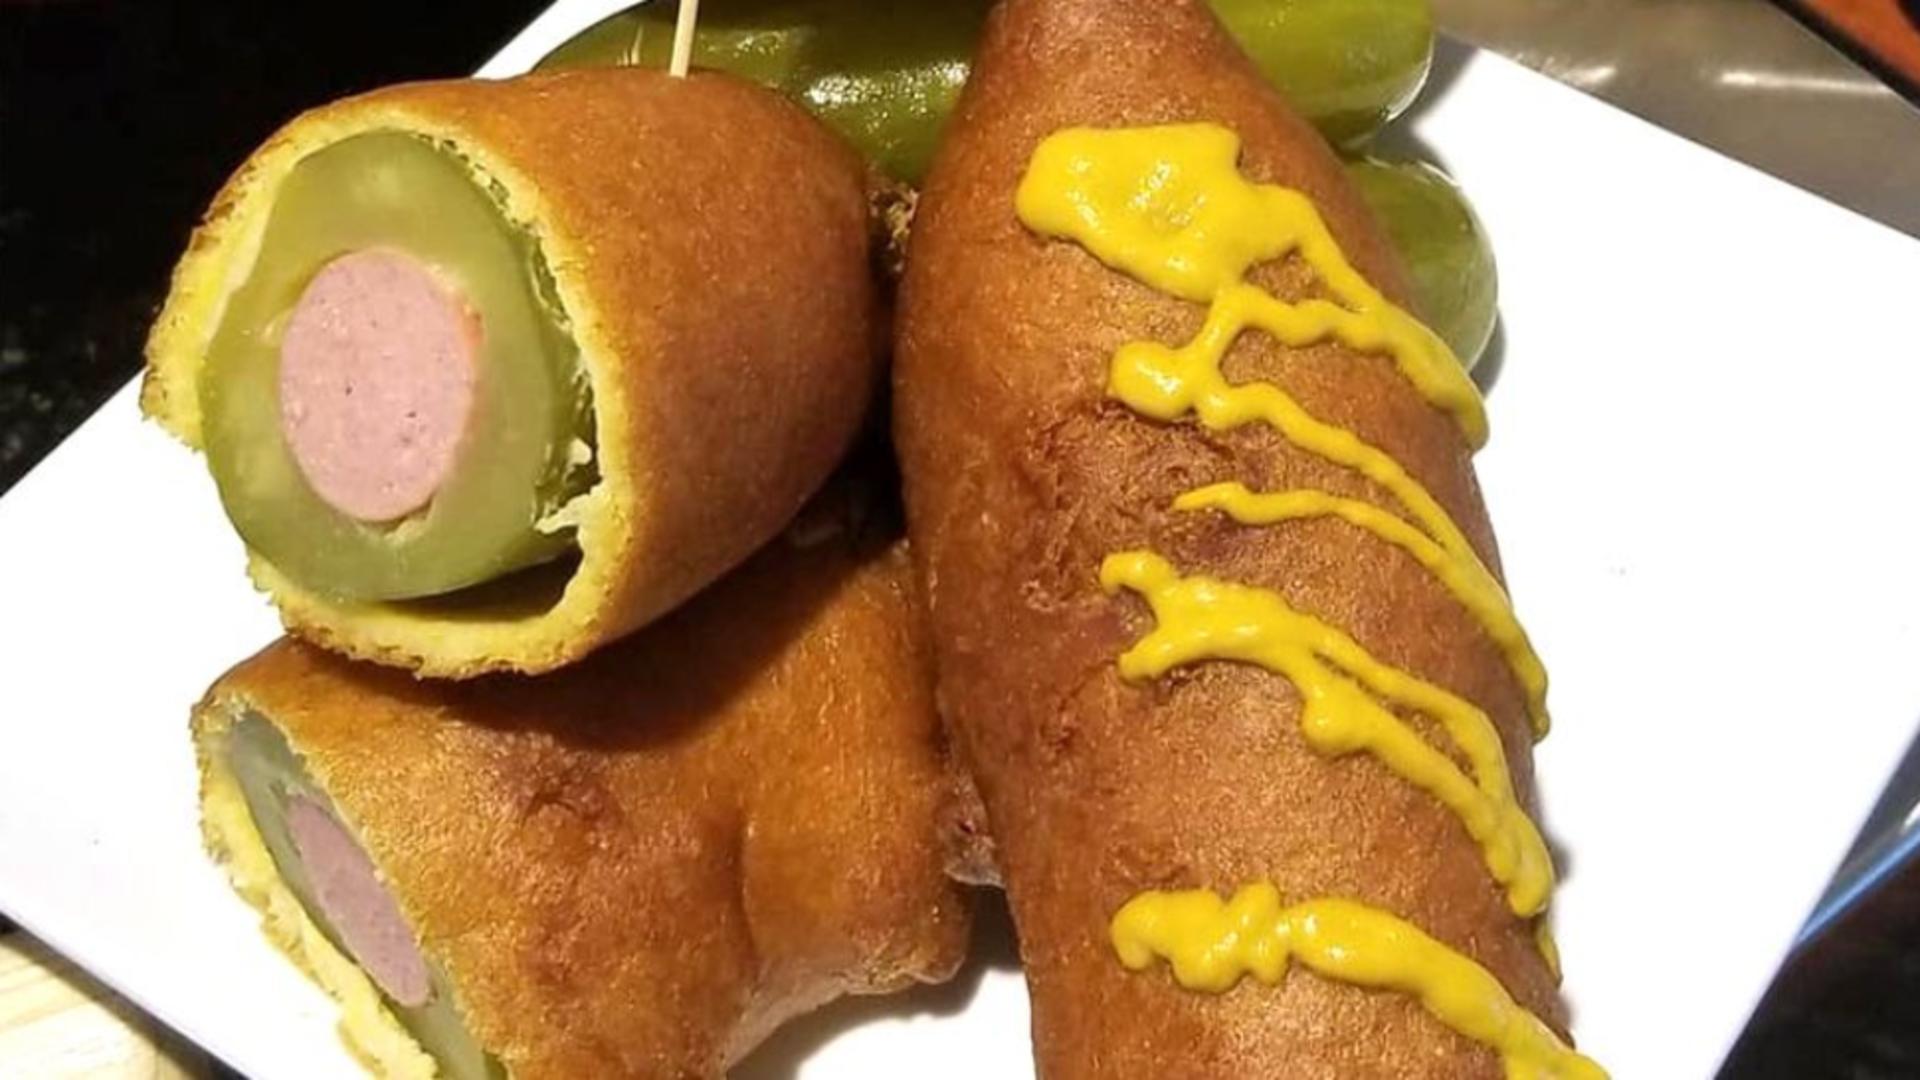 Ce este hotdogul Dilly Dog și cum îl prepari acasă, în doar câteva minute